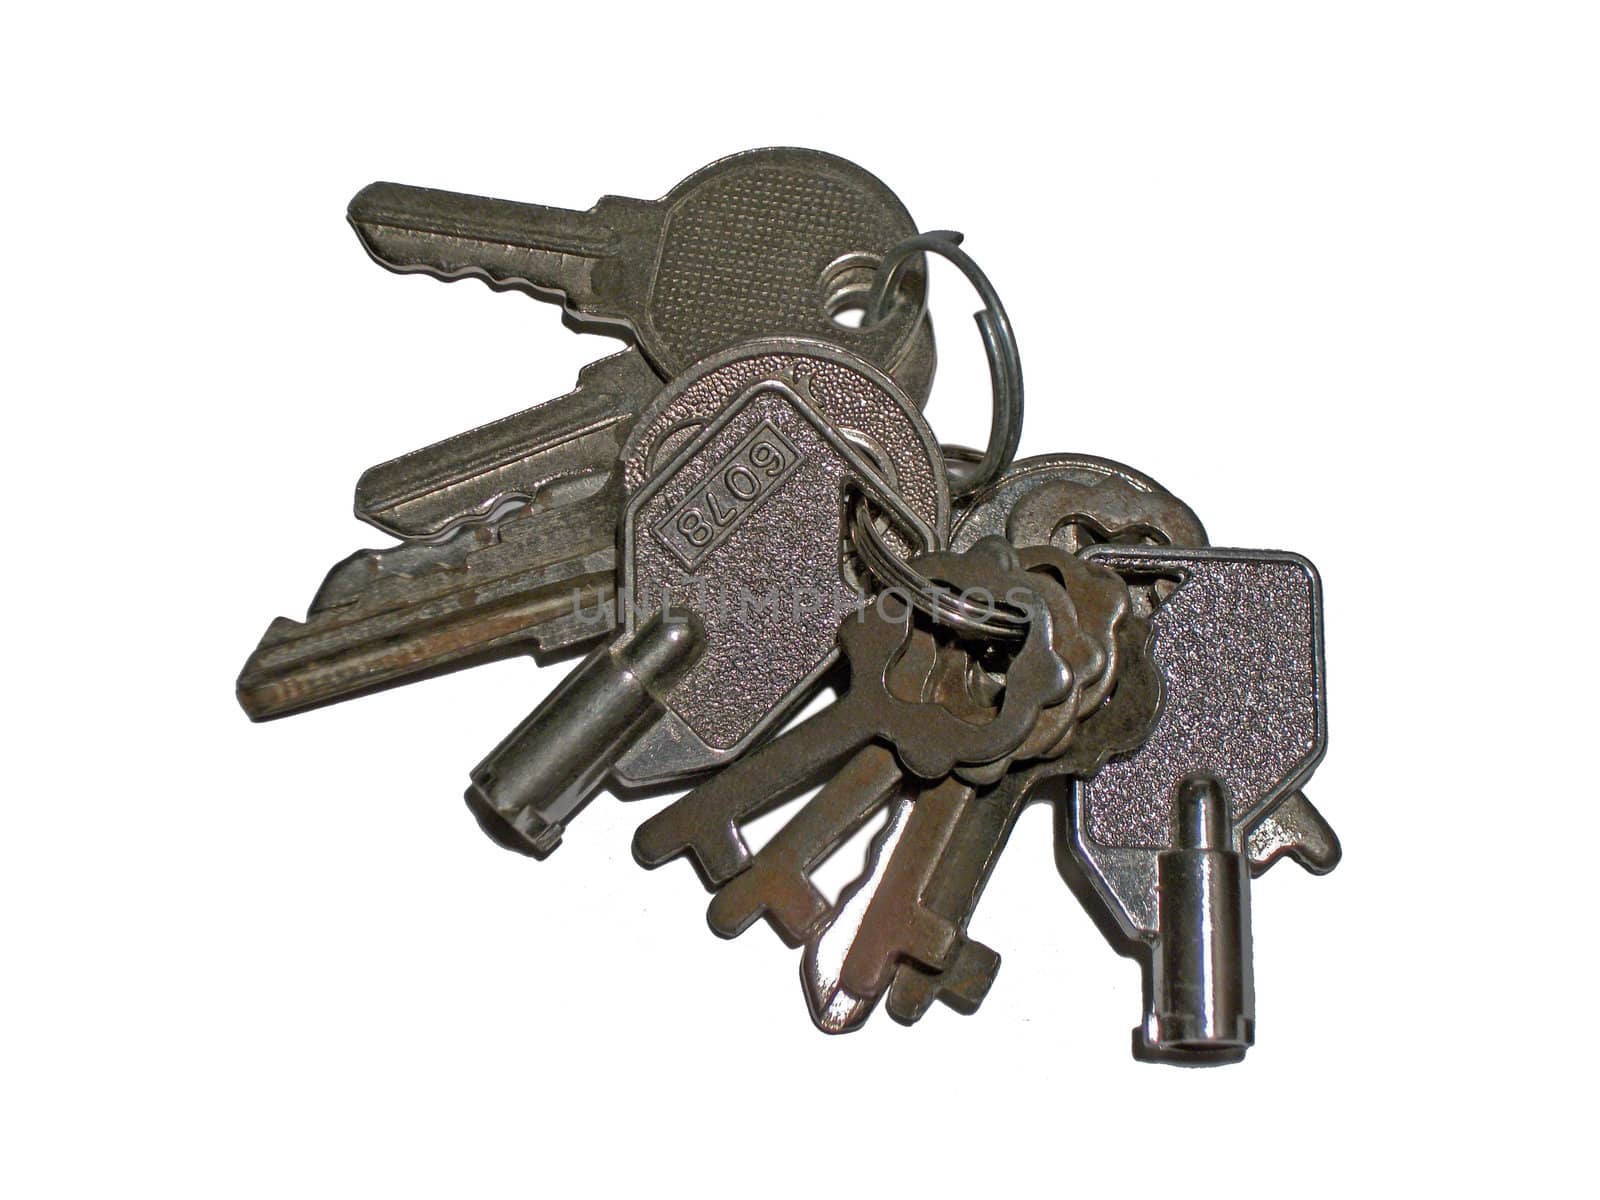 Keys by renegadewanderer